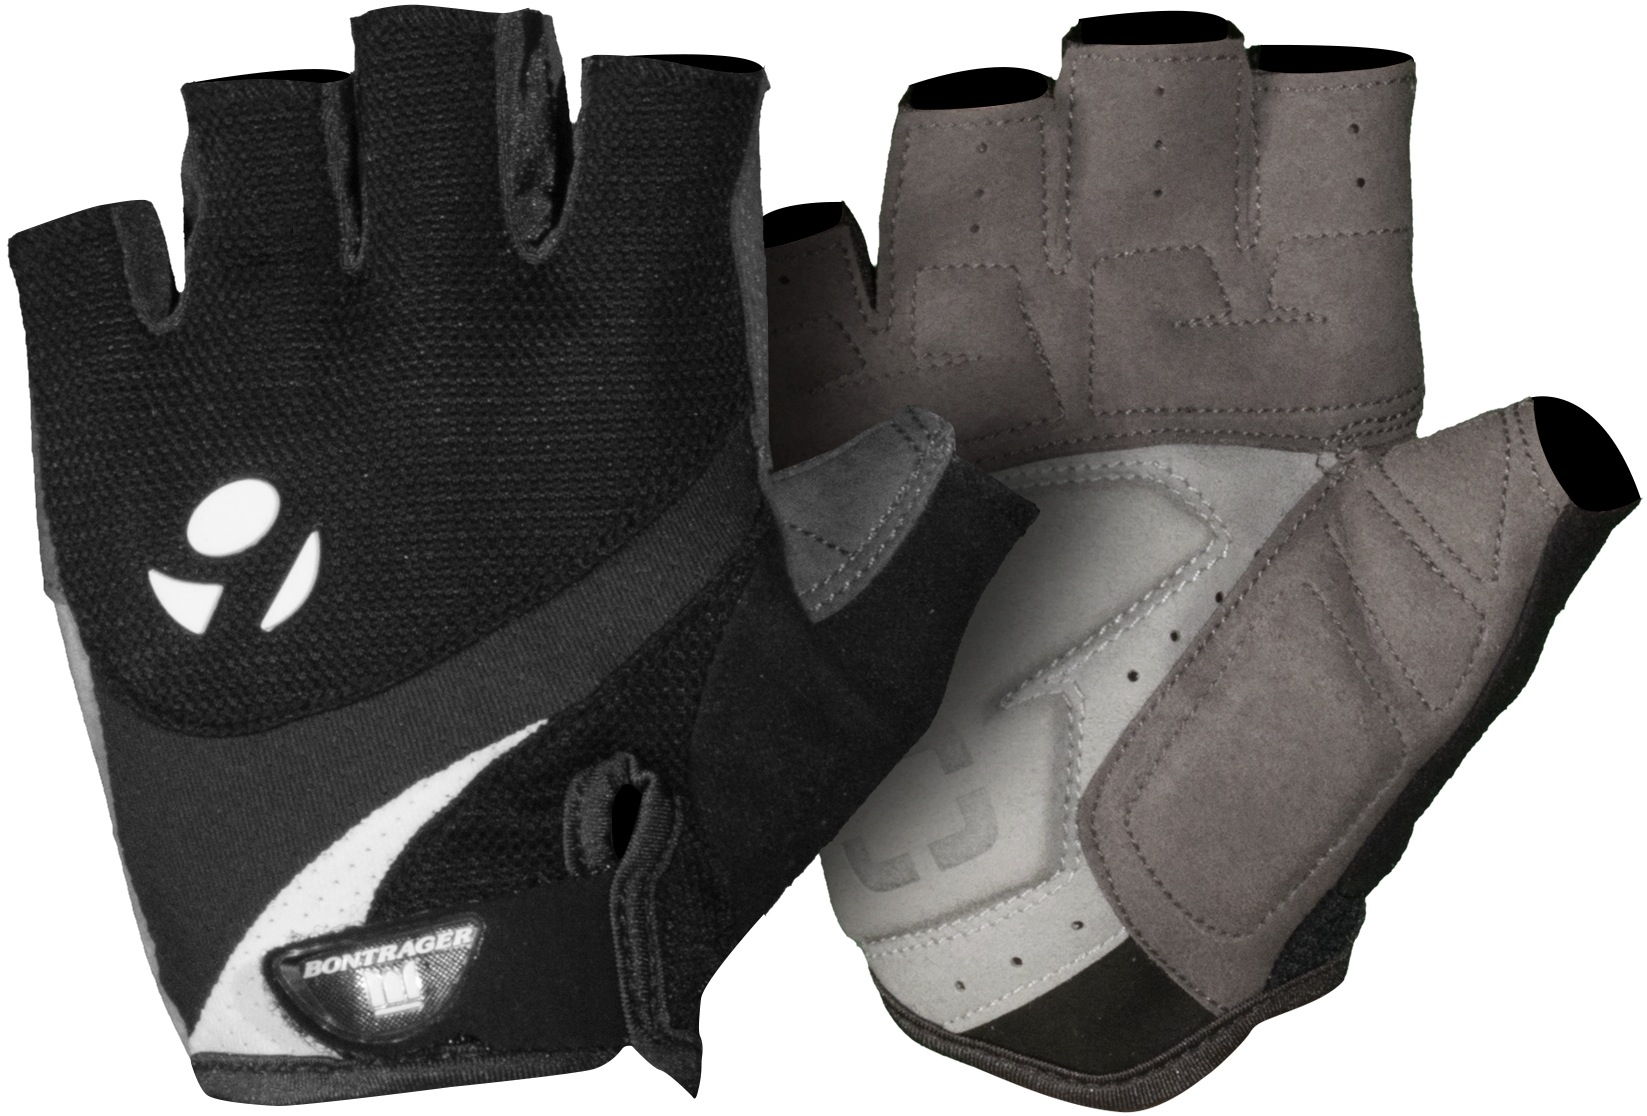 Bontrager Solstice Short Black Gloves 2019 